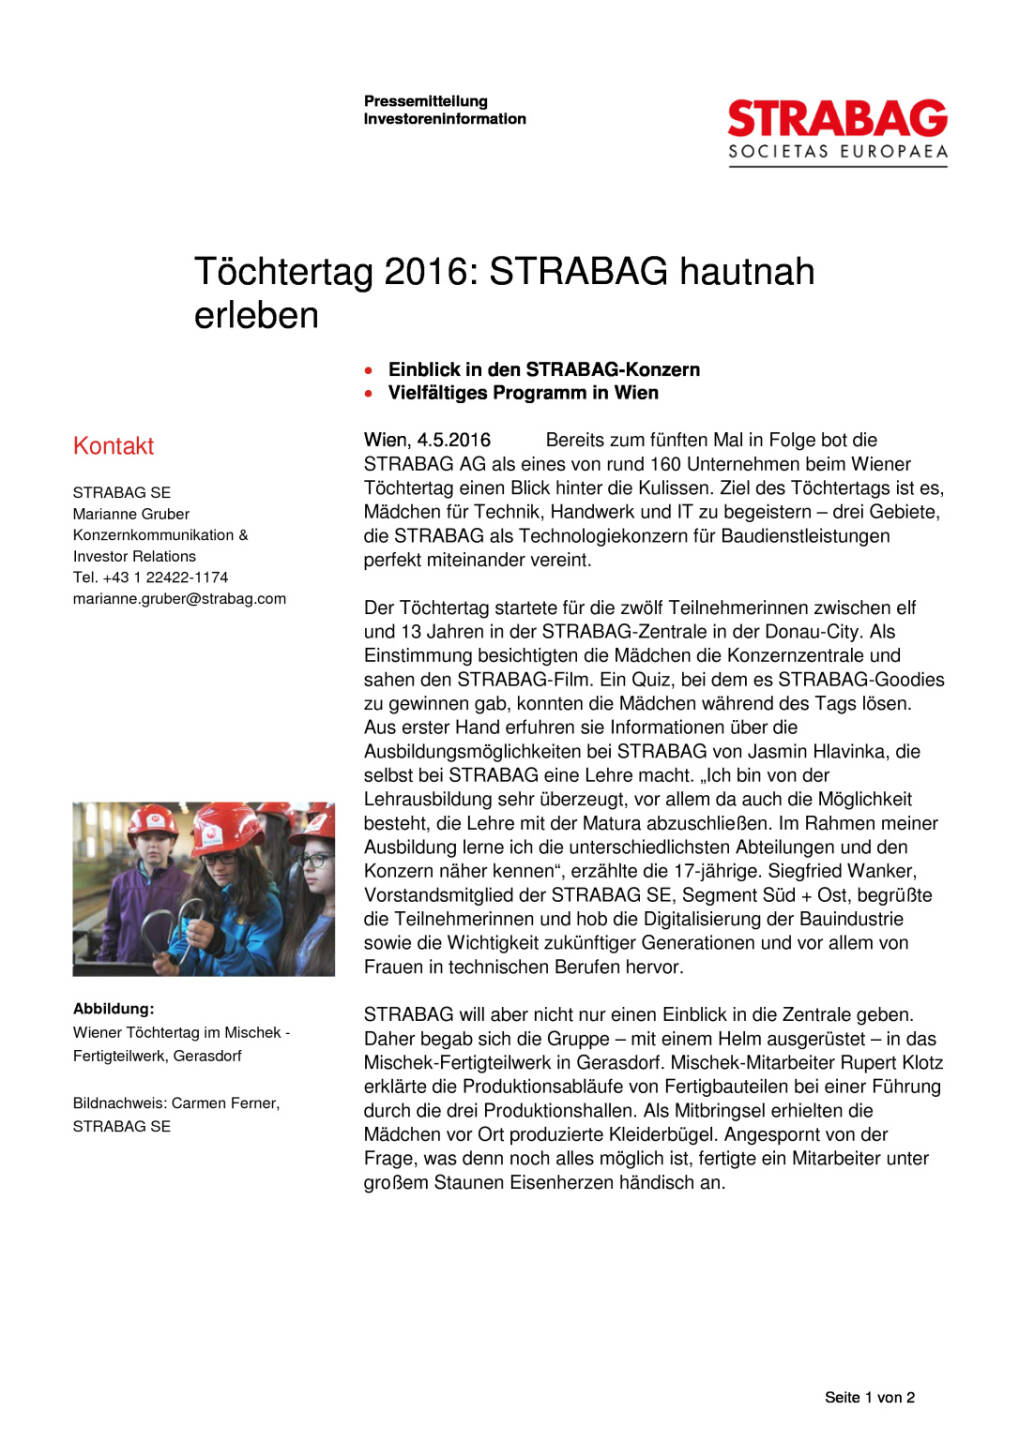 Strabag: Töchtertag 2016, Seite 1/2, komplettes Dokument unter http://boerse-social.com/static/uploads/file_1014_strabag_tochtertag_2016.pdf